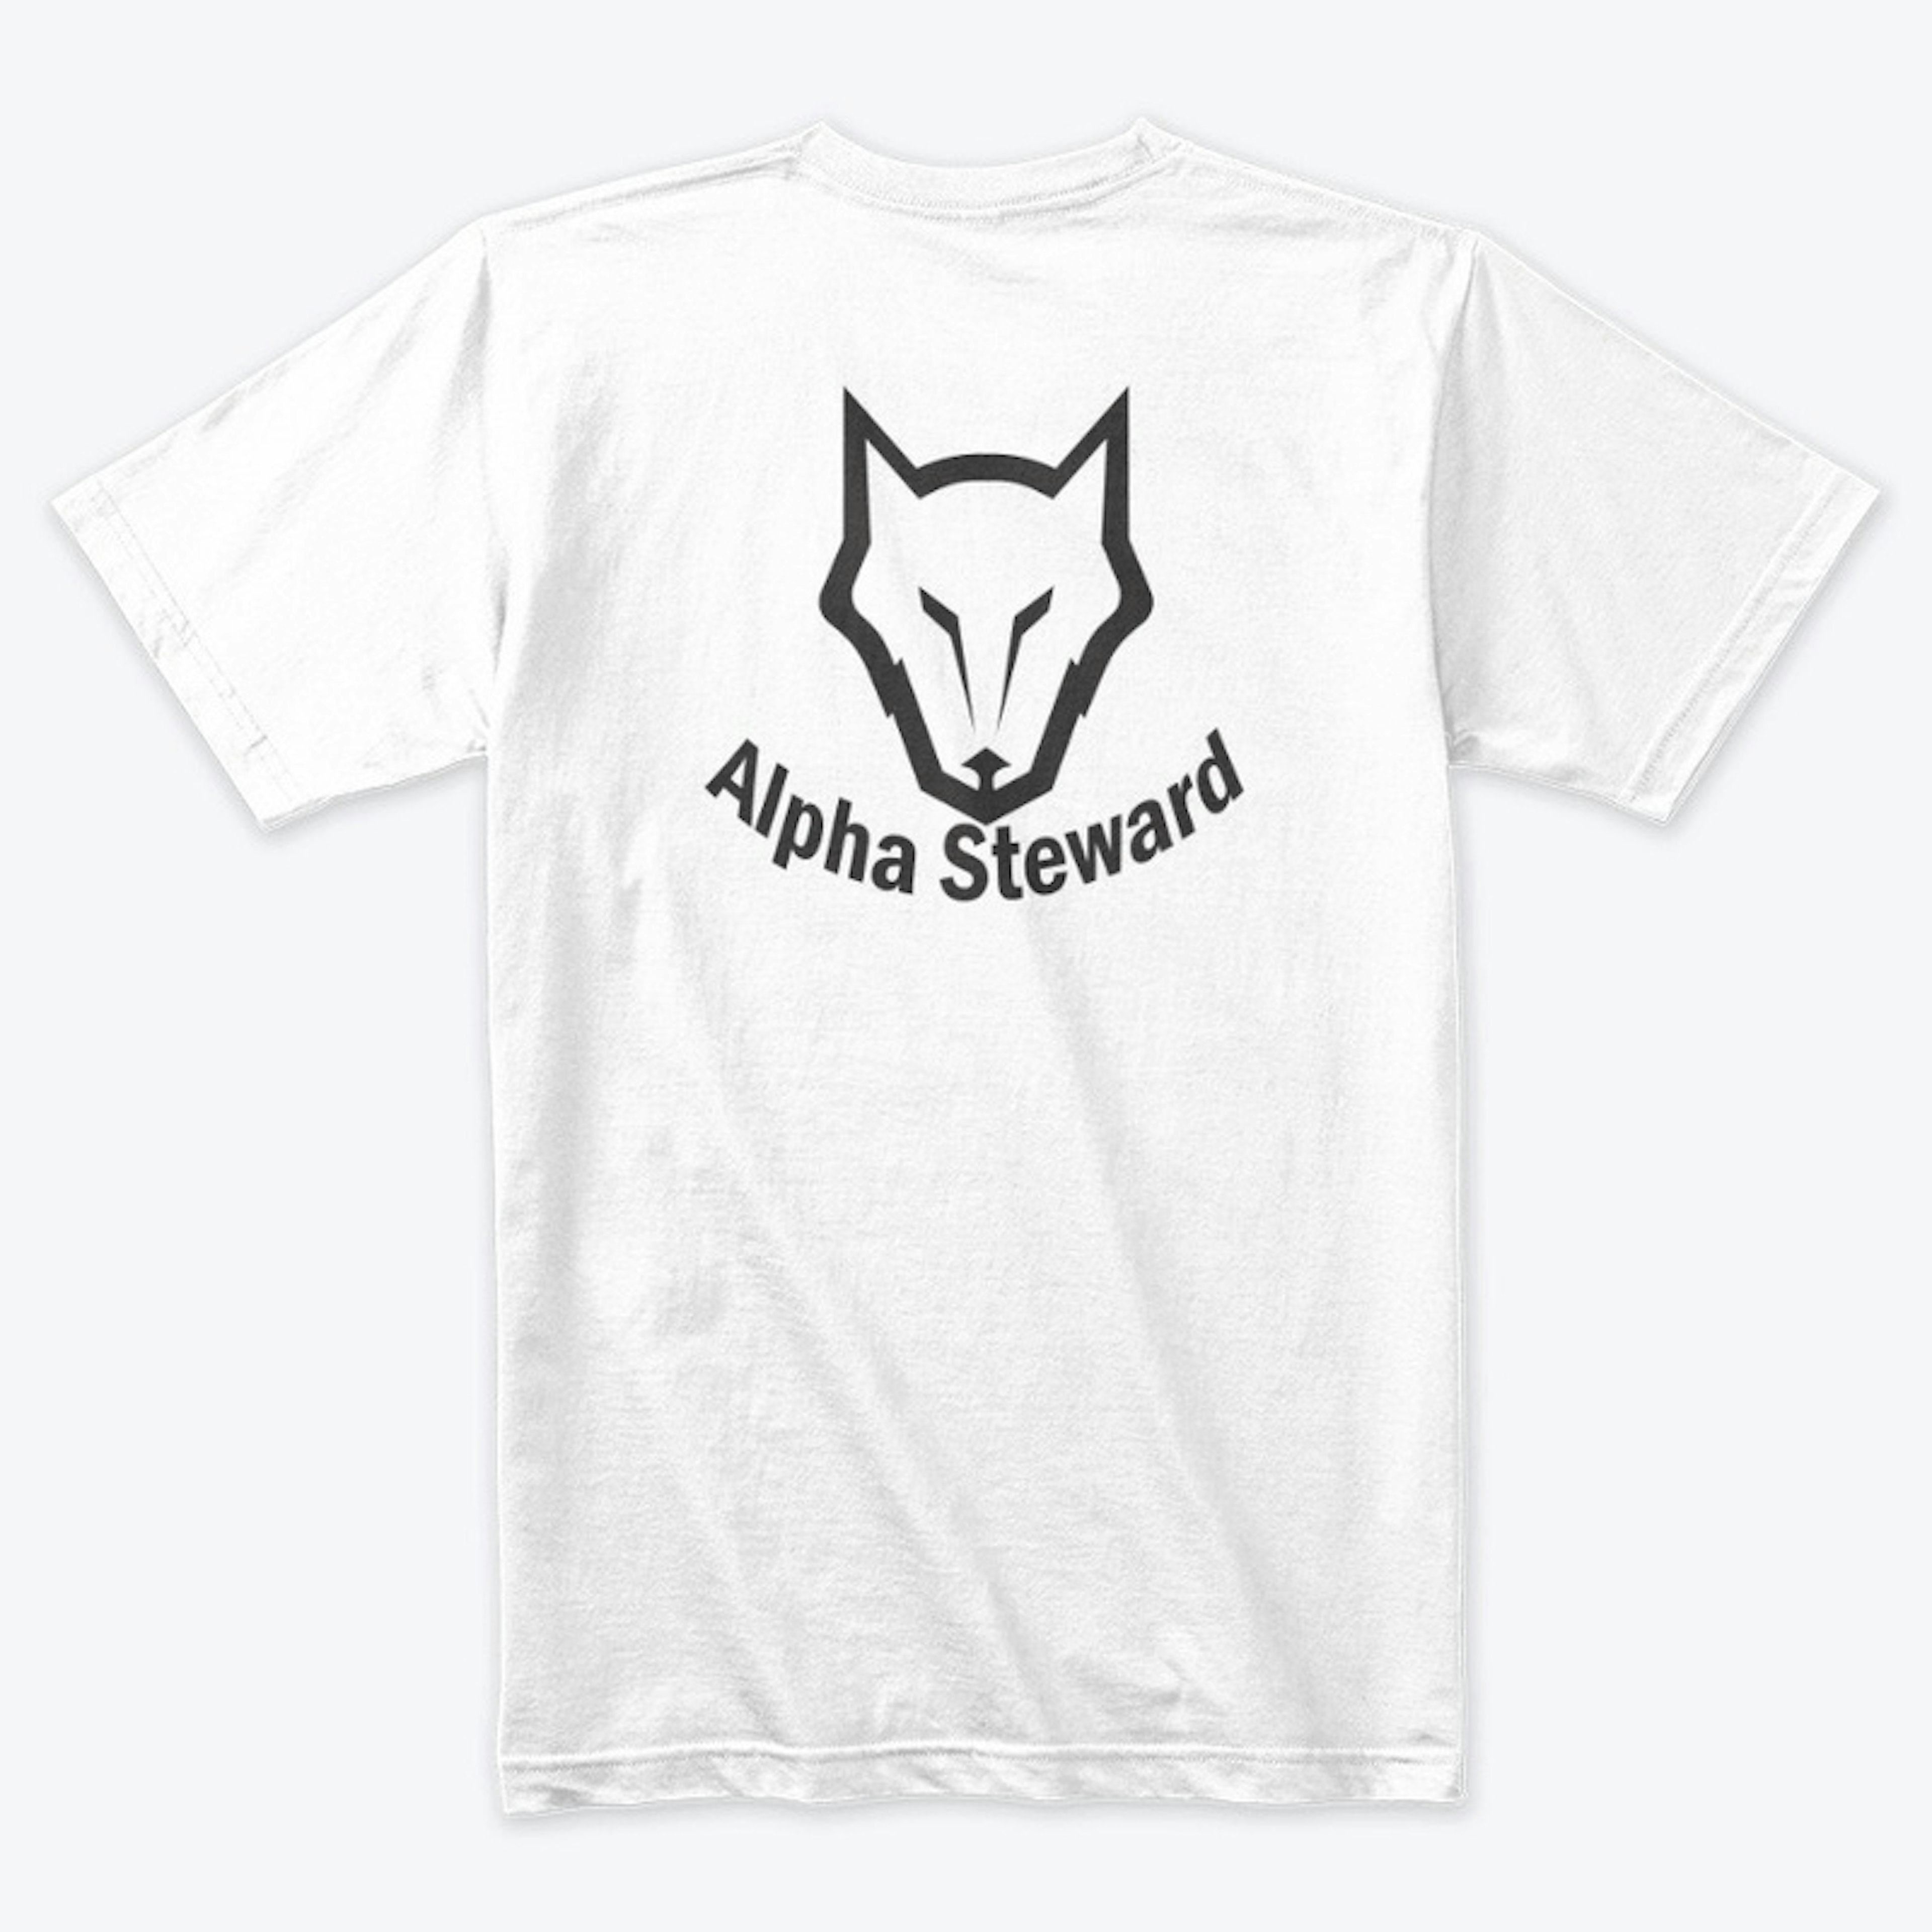 Alpha Steward Shirts